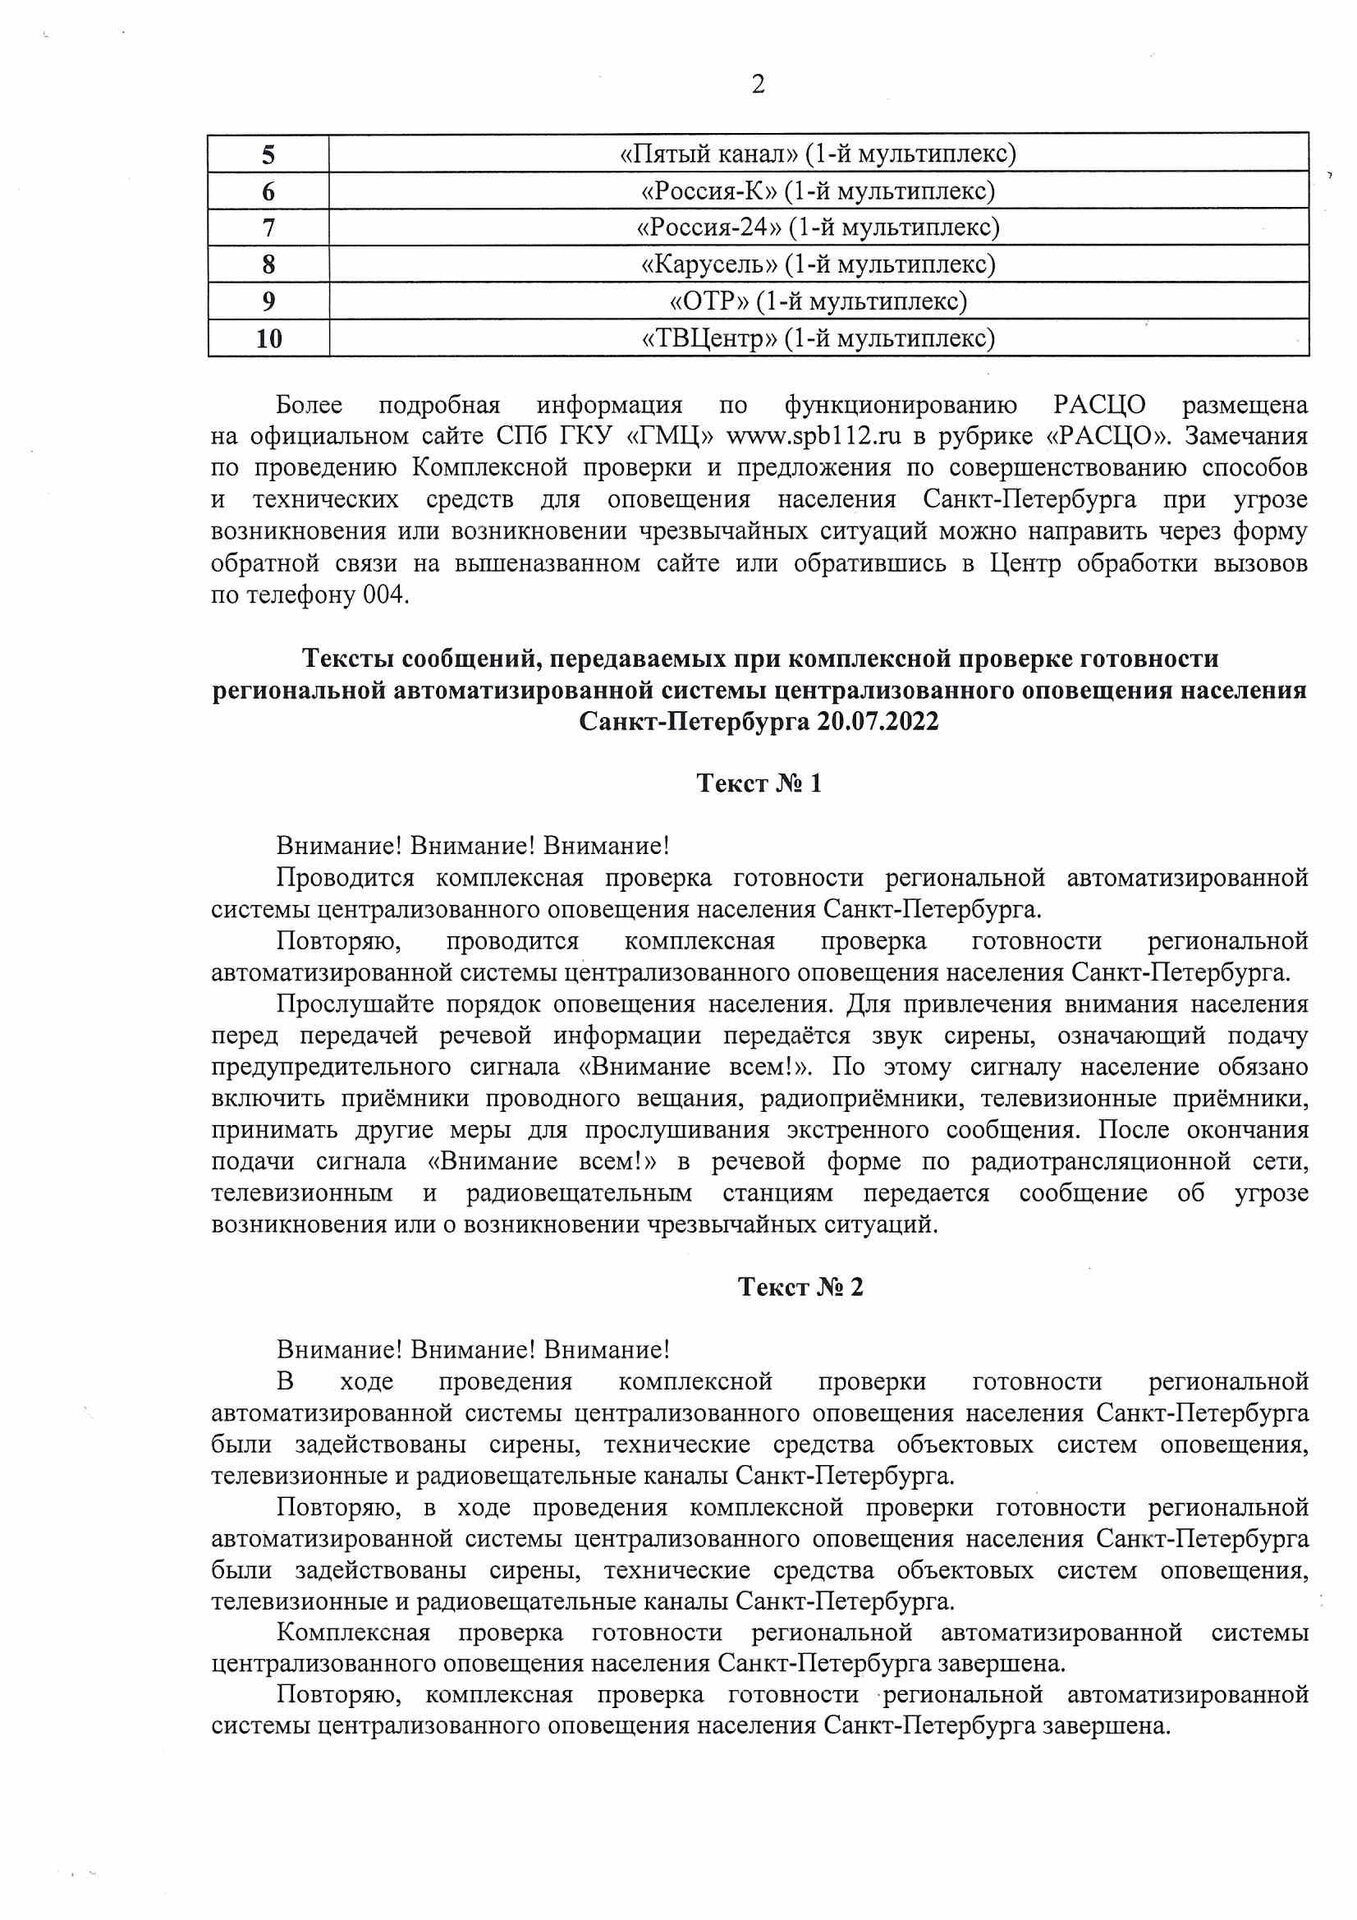 Информация о проведении комплексной проверки готовности РАСЦО СПб. лист 2